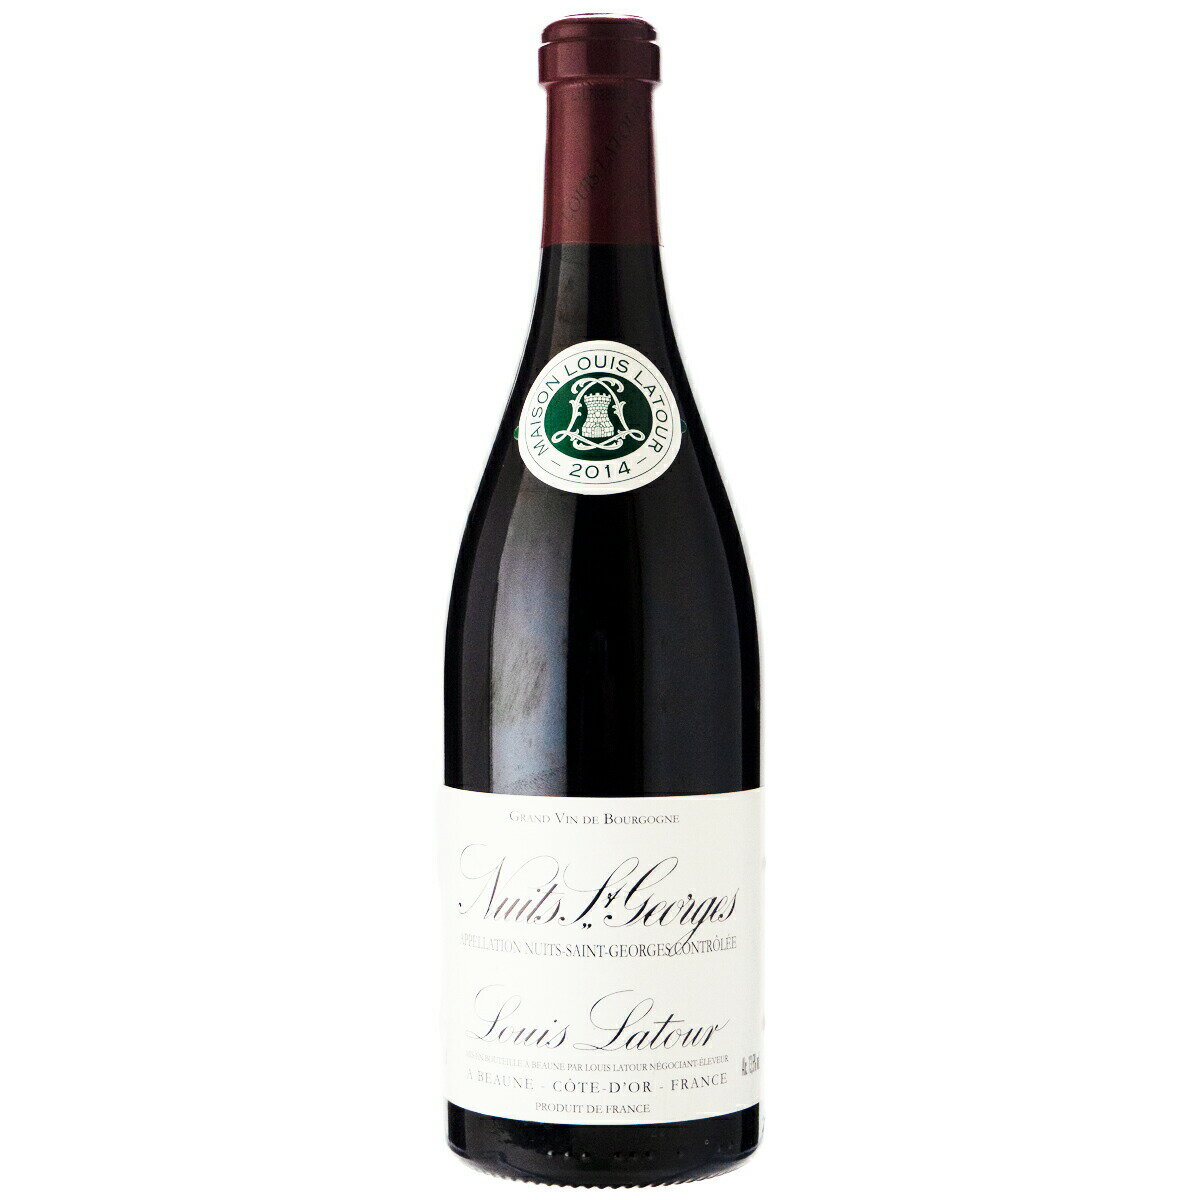 ルイラトゥール ニュイ サン ジョルジュ 2014 750ml 赤ワイン フランス (x02-3726)